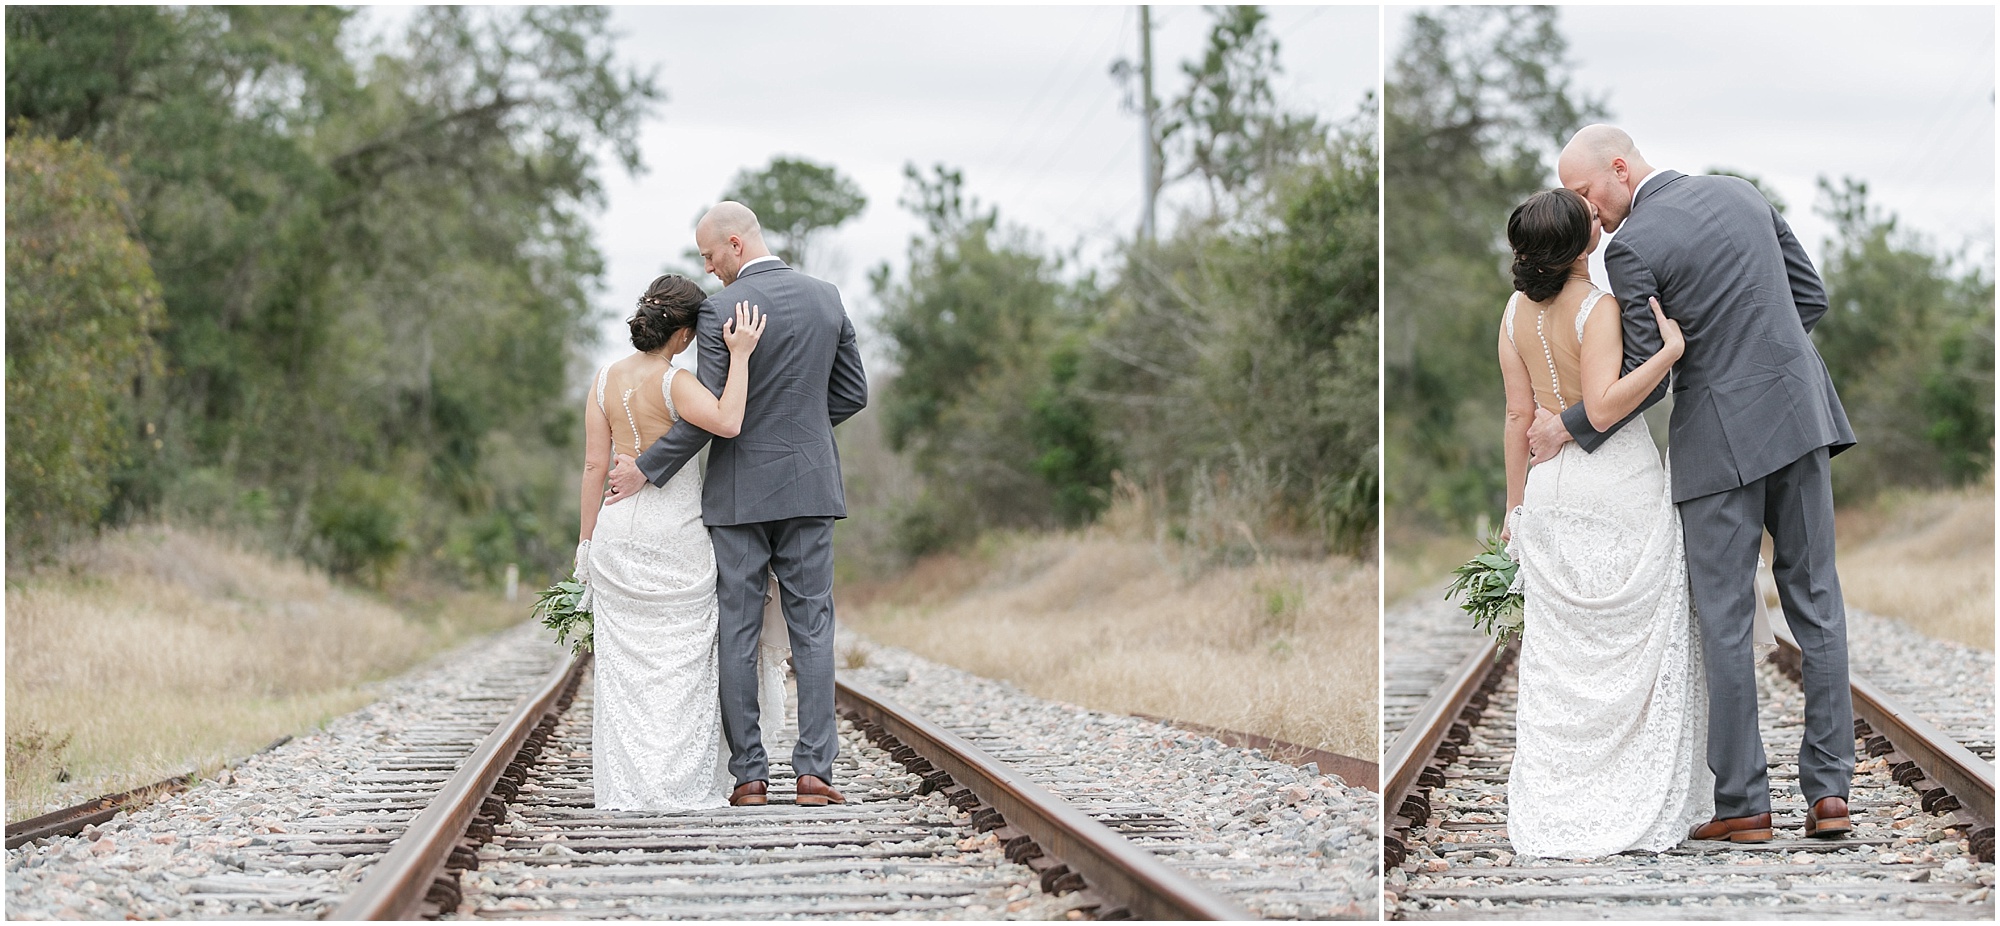 Couple kissing while walking along abandoned railroad tracks.